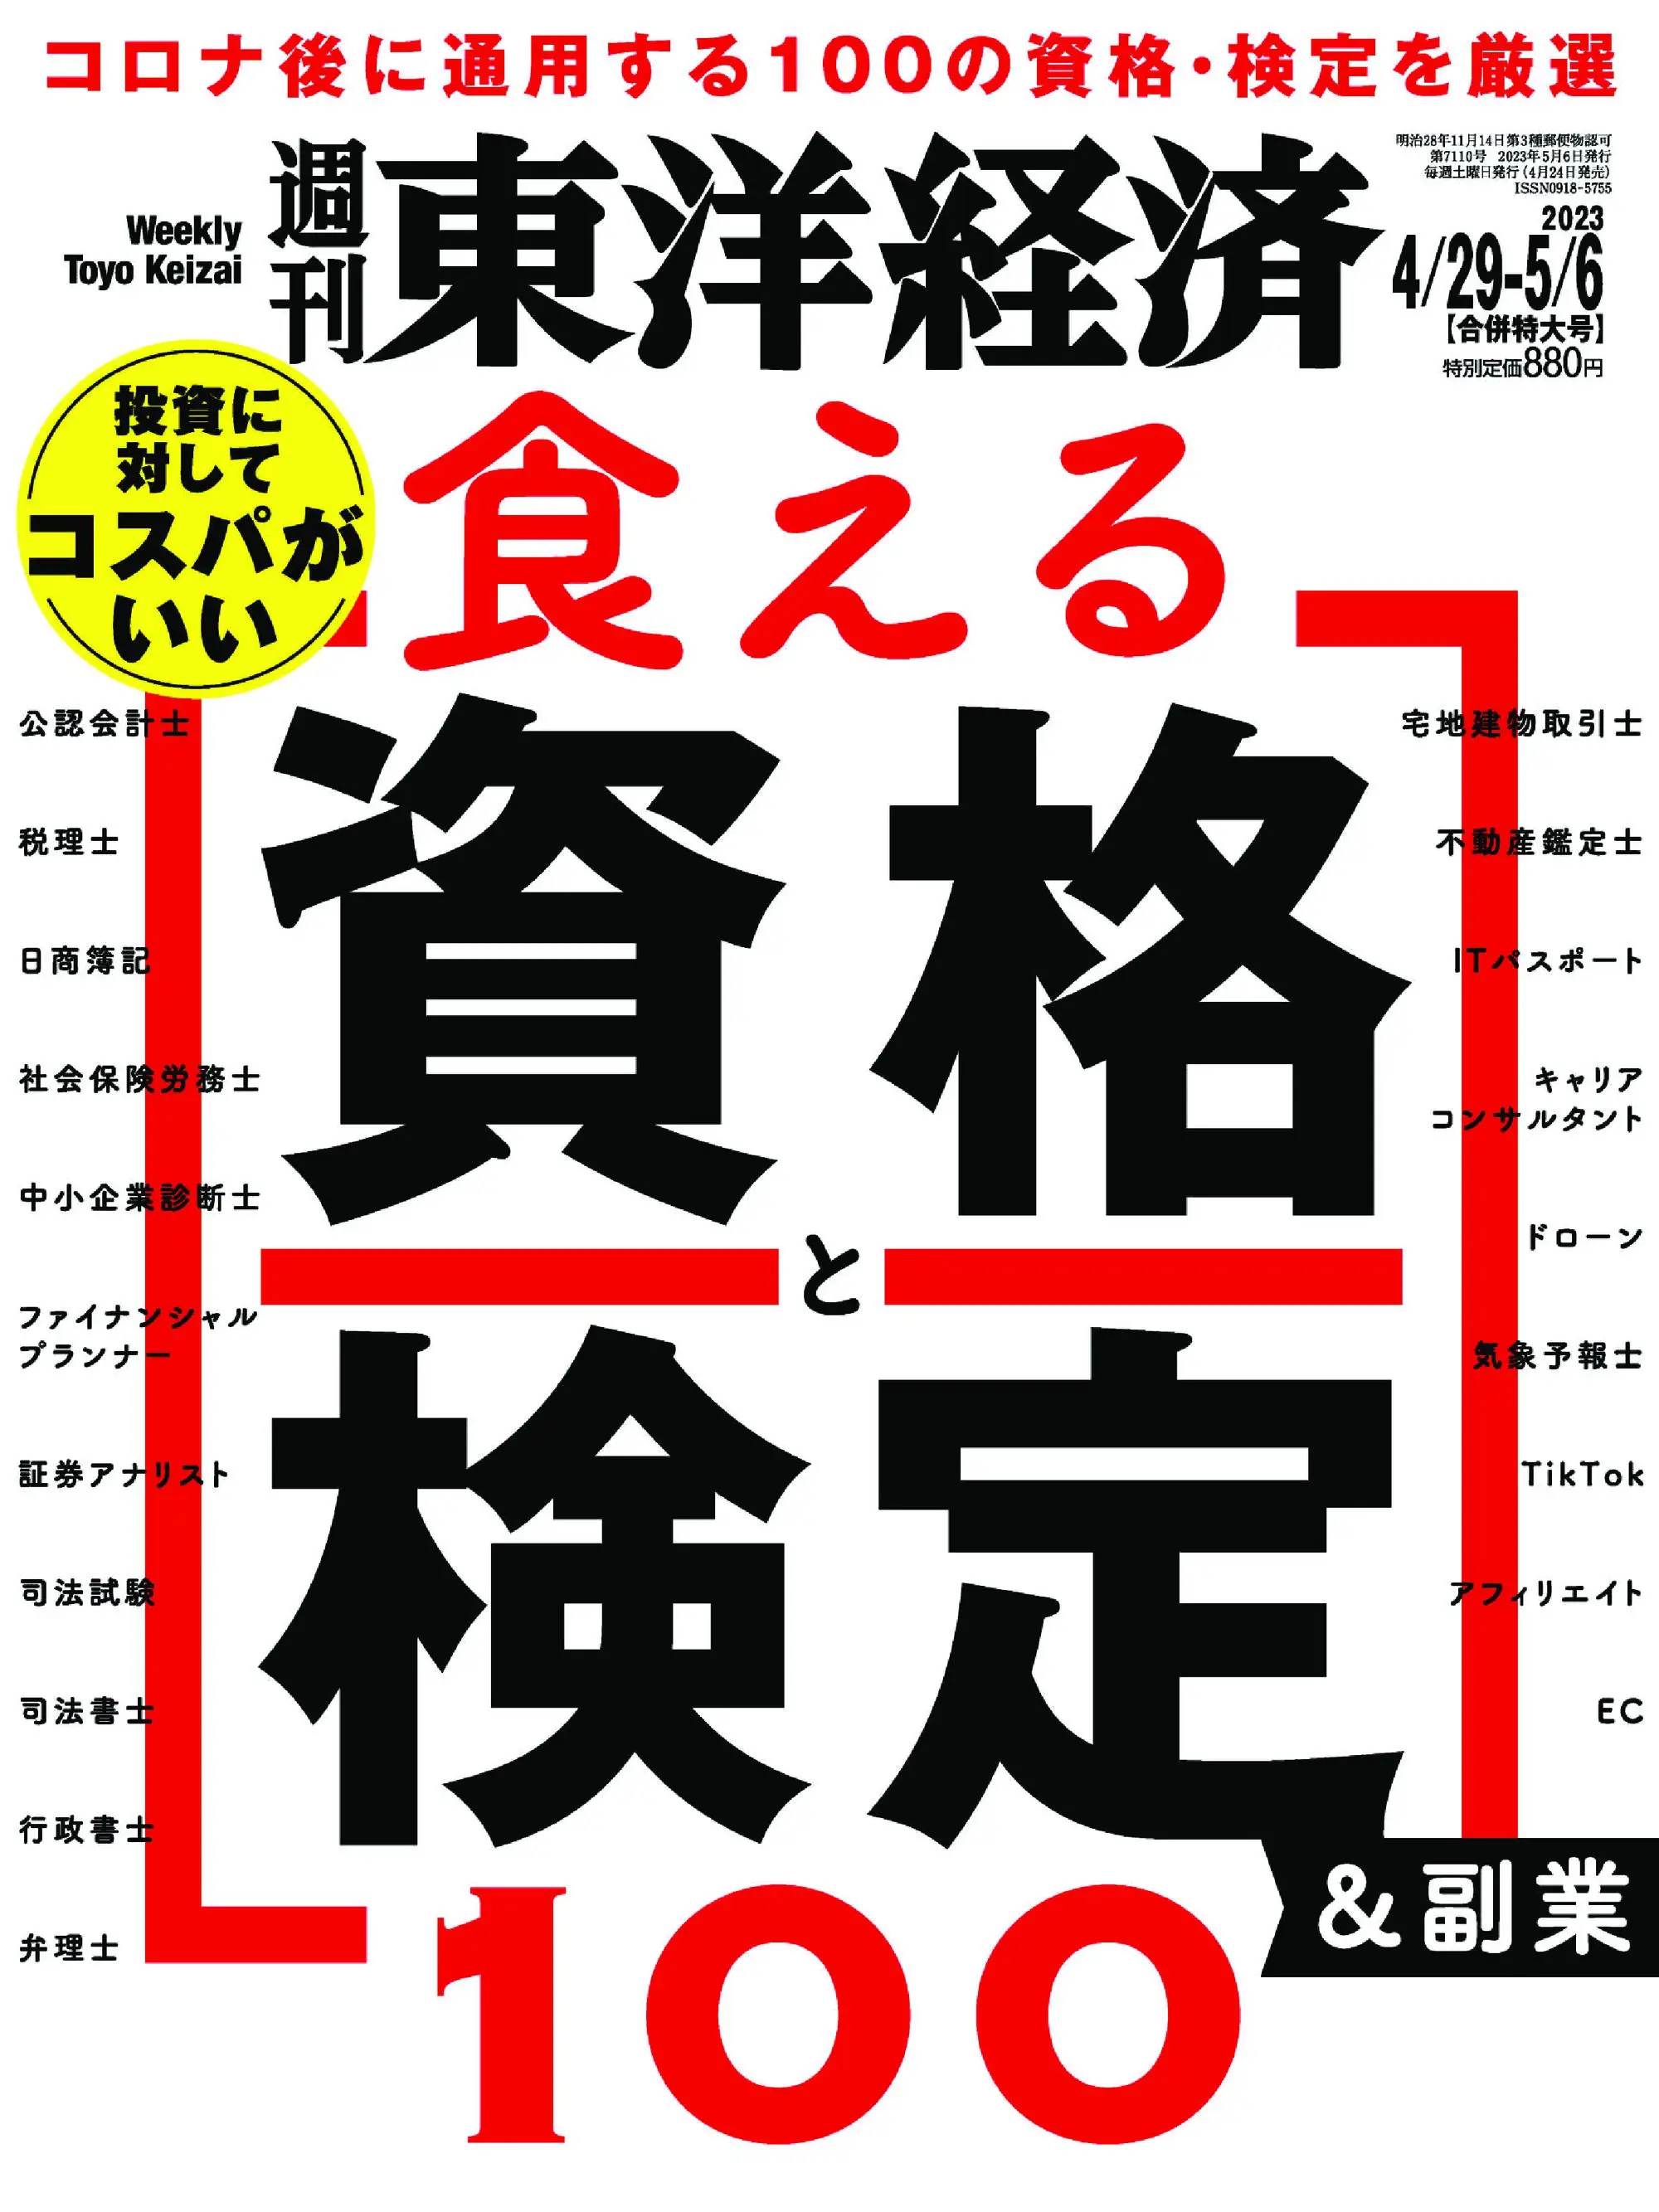 Weekly Toyo Keizai 週刊東洋経済 2023年4月24日